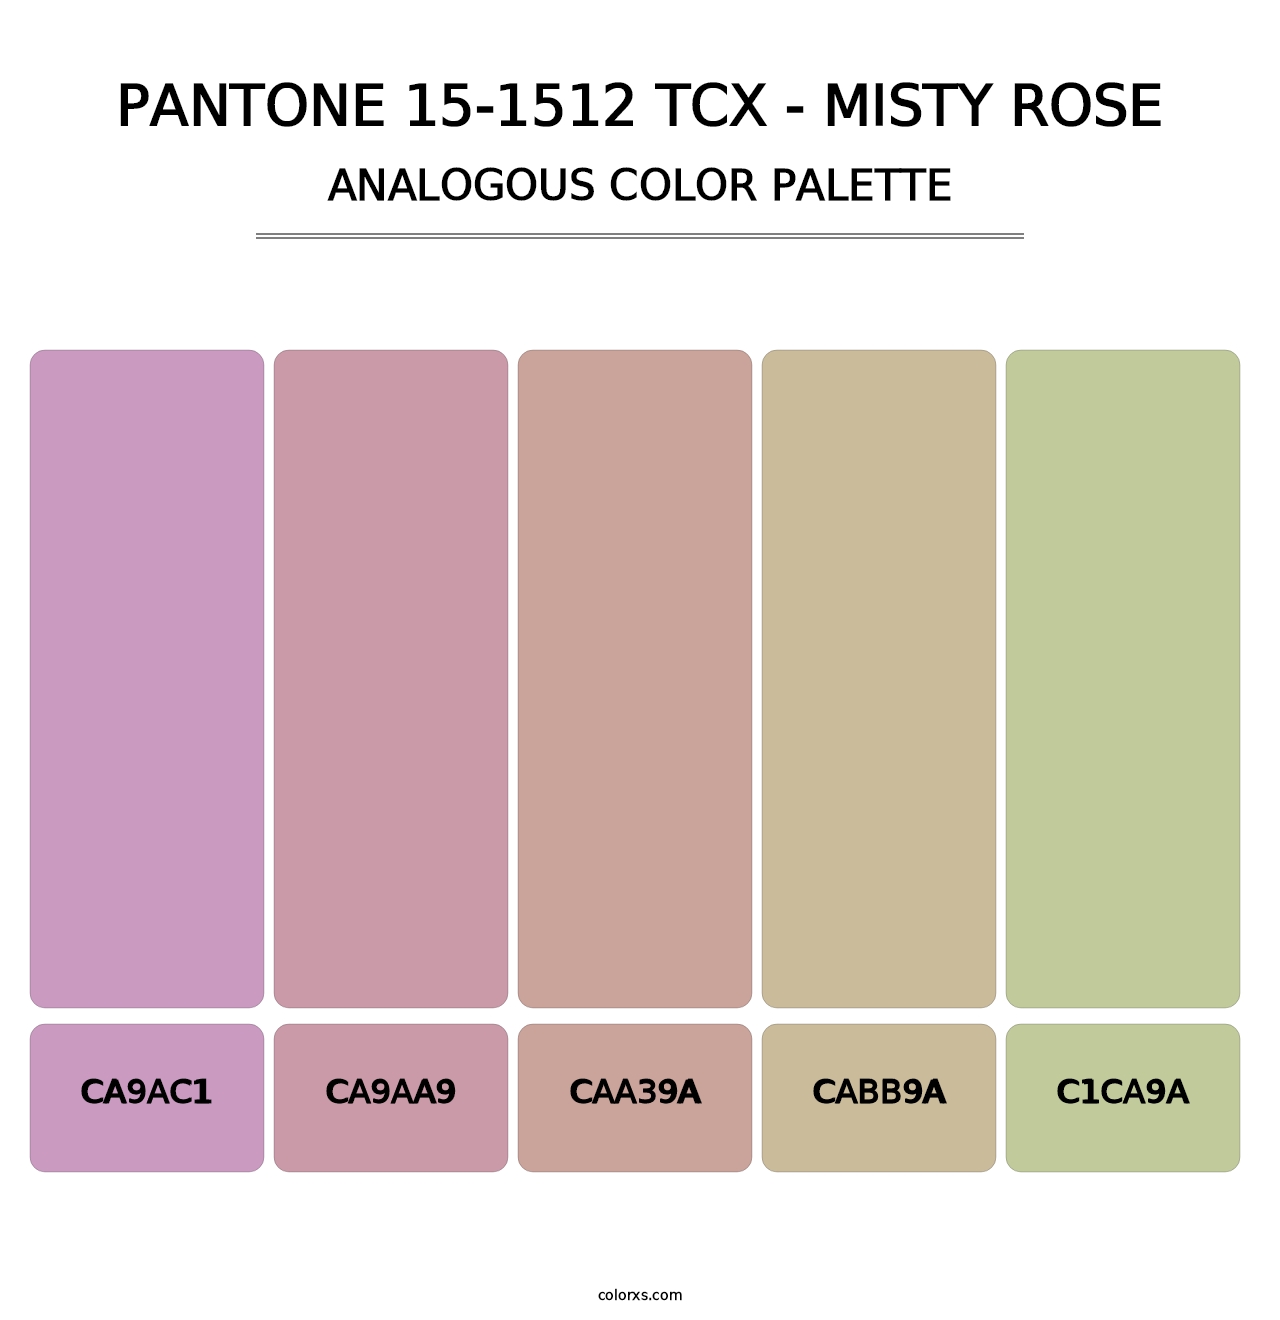 PANTONE 15-1512 TCX - Misty Rose - Analogous Color Palette